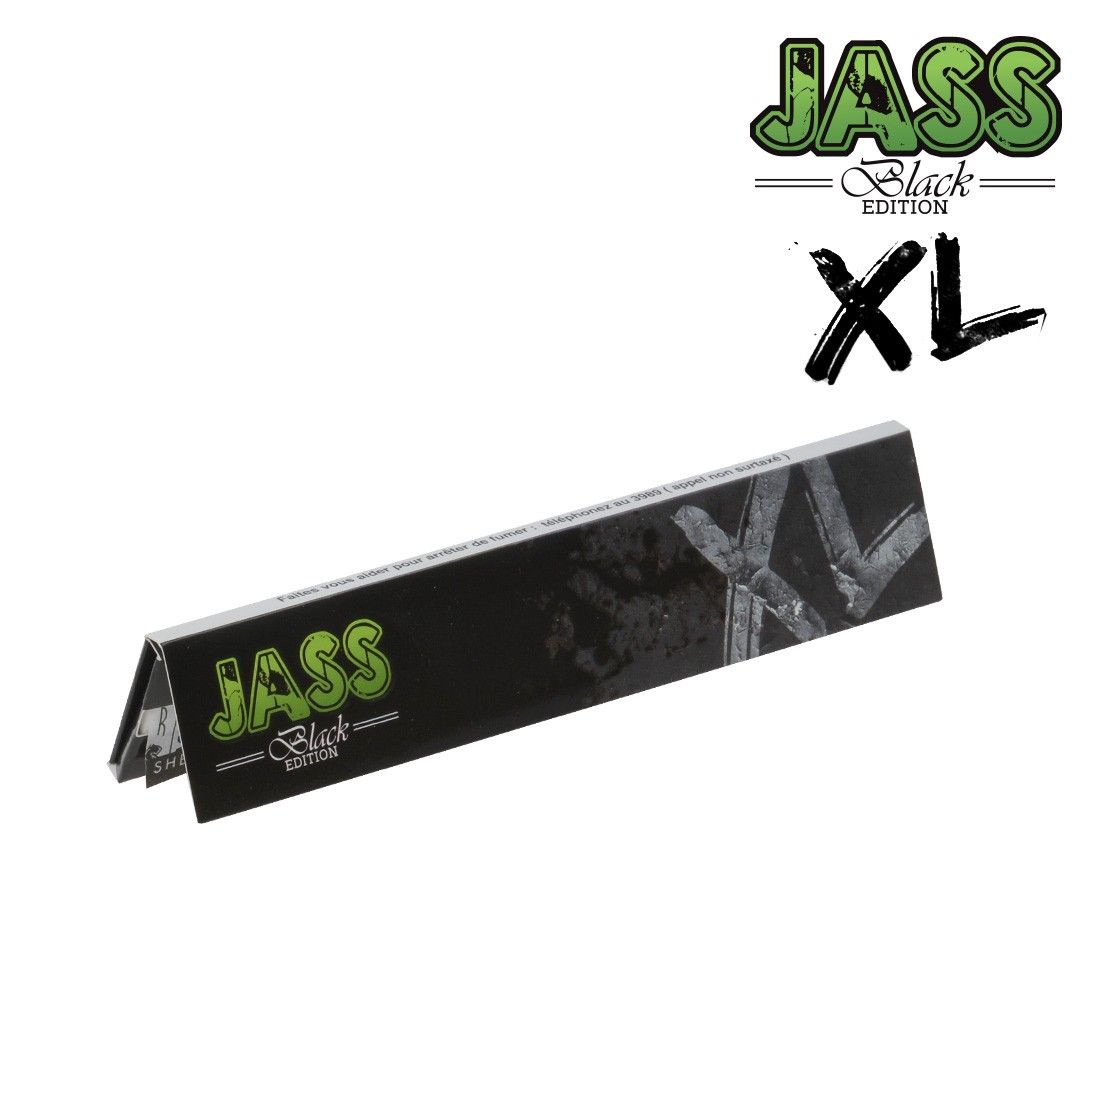 Feuilles à rouler Jass Black Edition XL, disponibles sur S Factory !